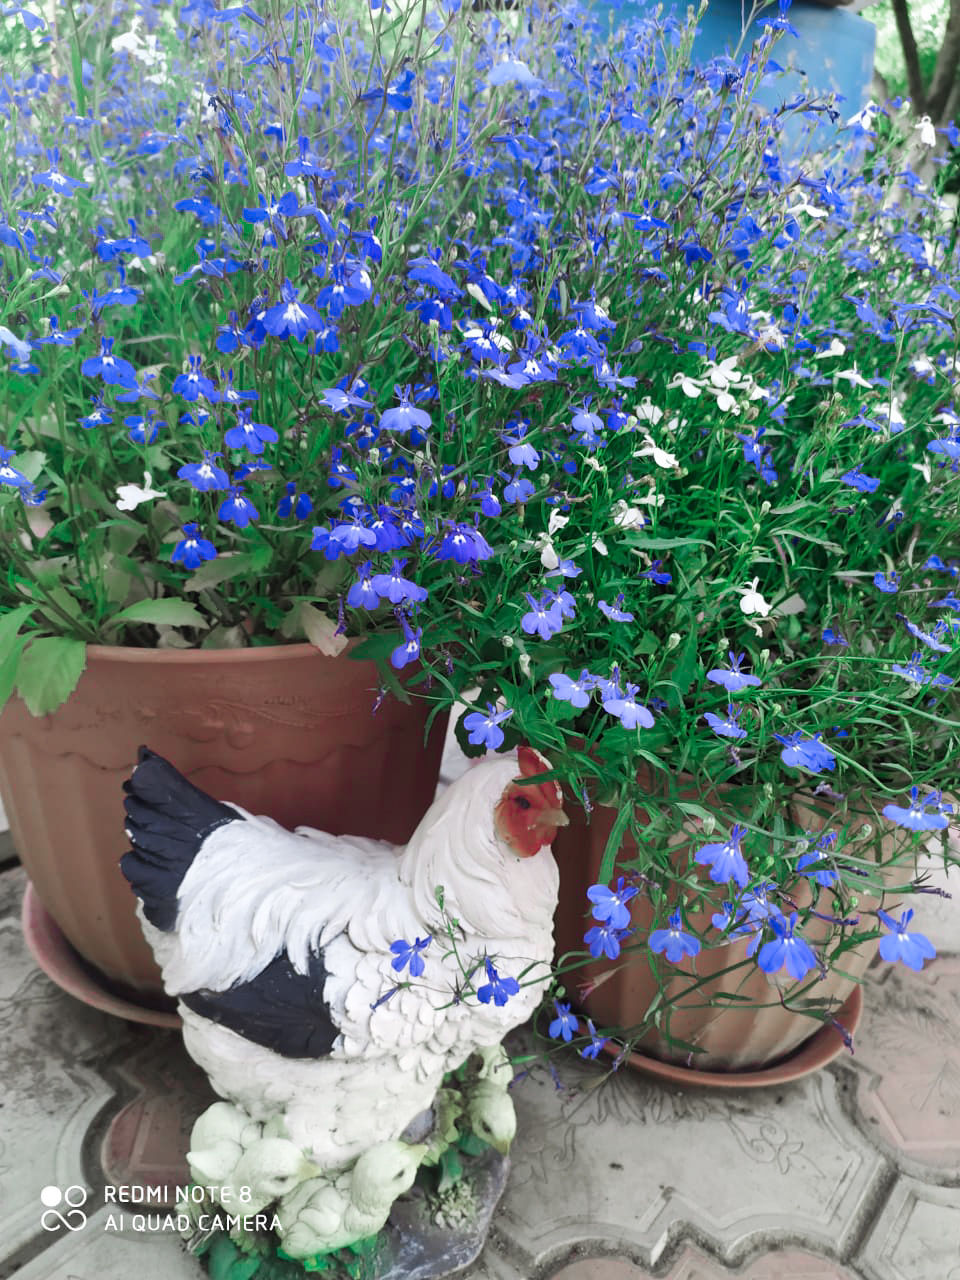 Участница нашего фотоконкурса «Цветы в моем саду»: "Секрет моего цветущего сада - большая любовь к цветам"